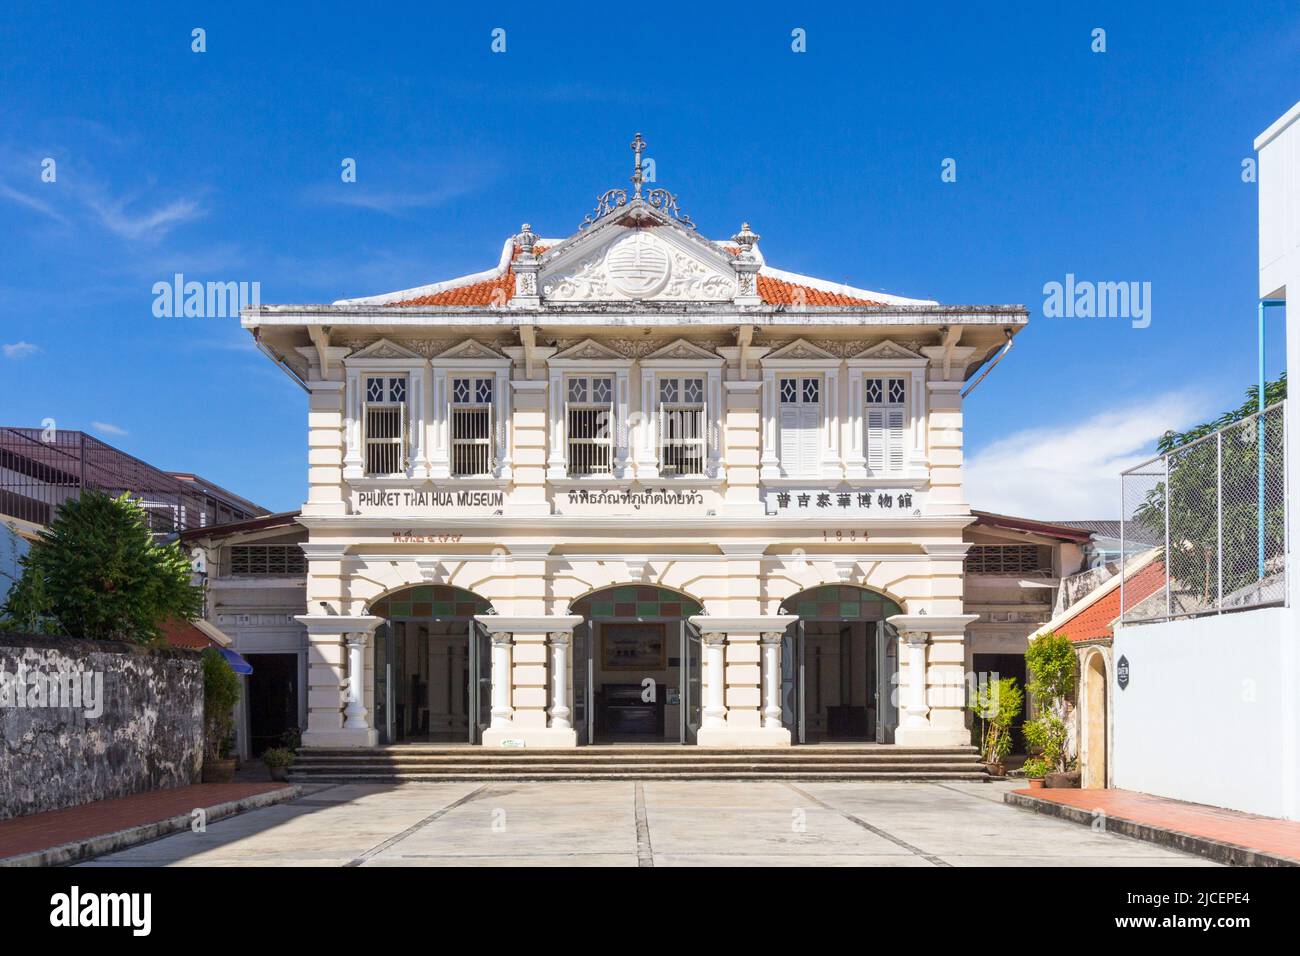 The Phuket Thai Hua Museum dedicated to local Chinese heritage in Phuket, Thailand Stock Photo